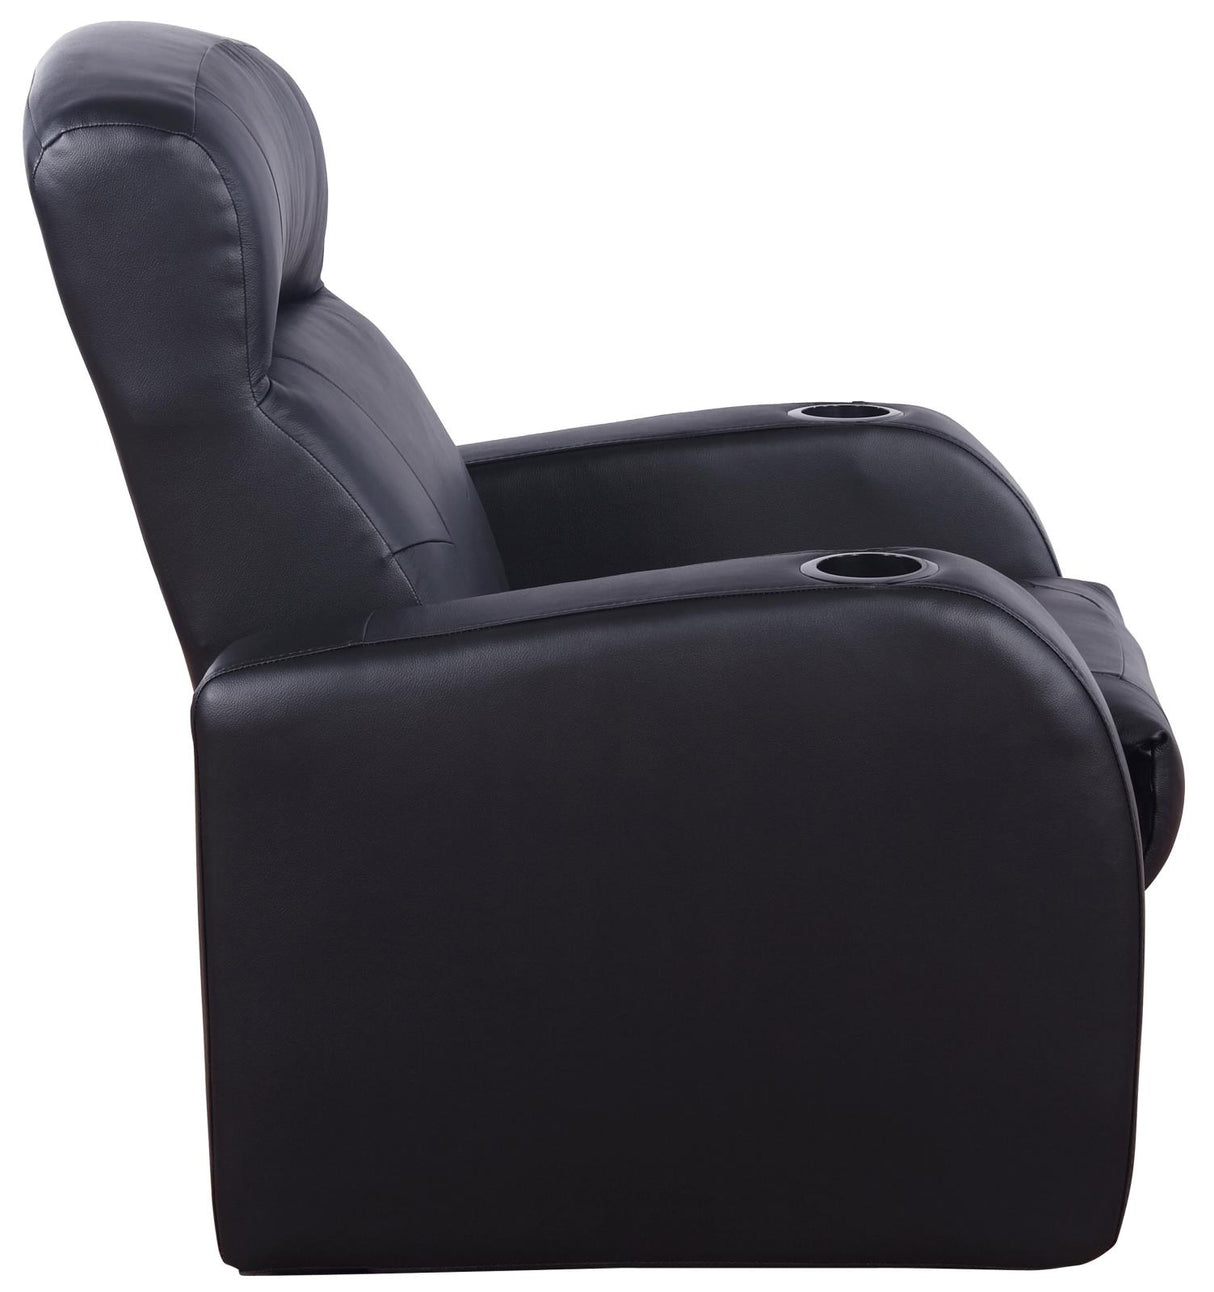 Cyrus Upholstered Recliner Living Room Set Black - 600001-S5A - Luna Furniture